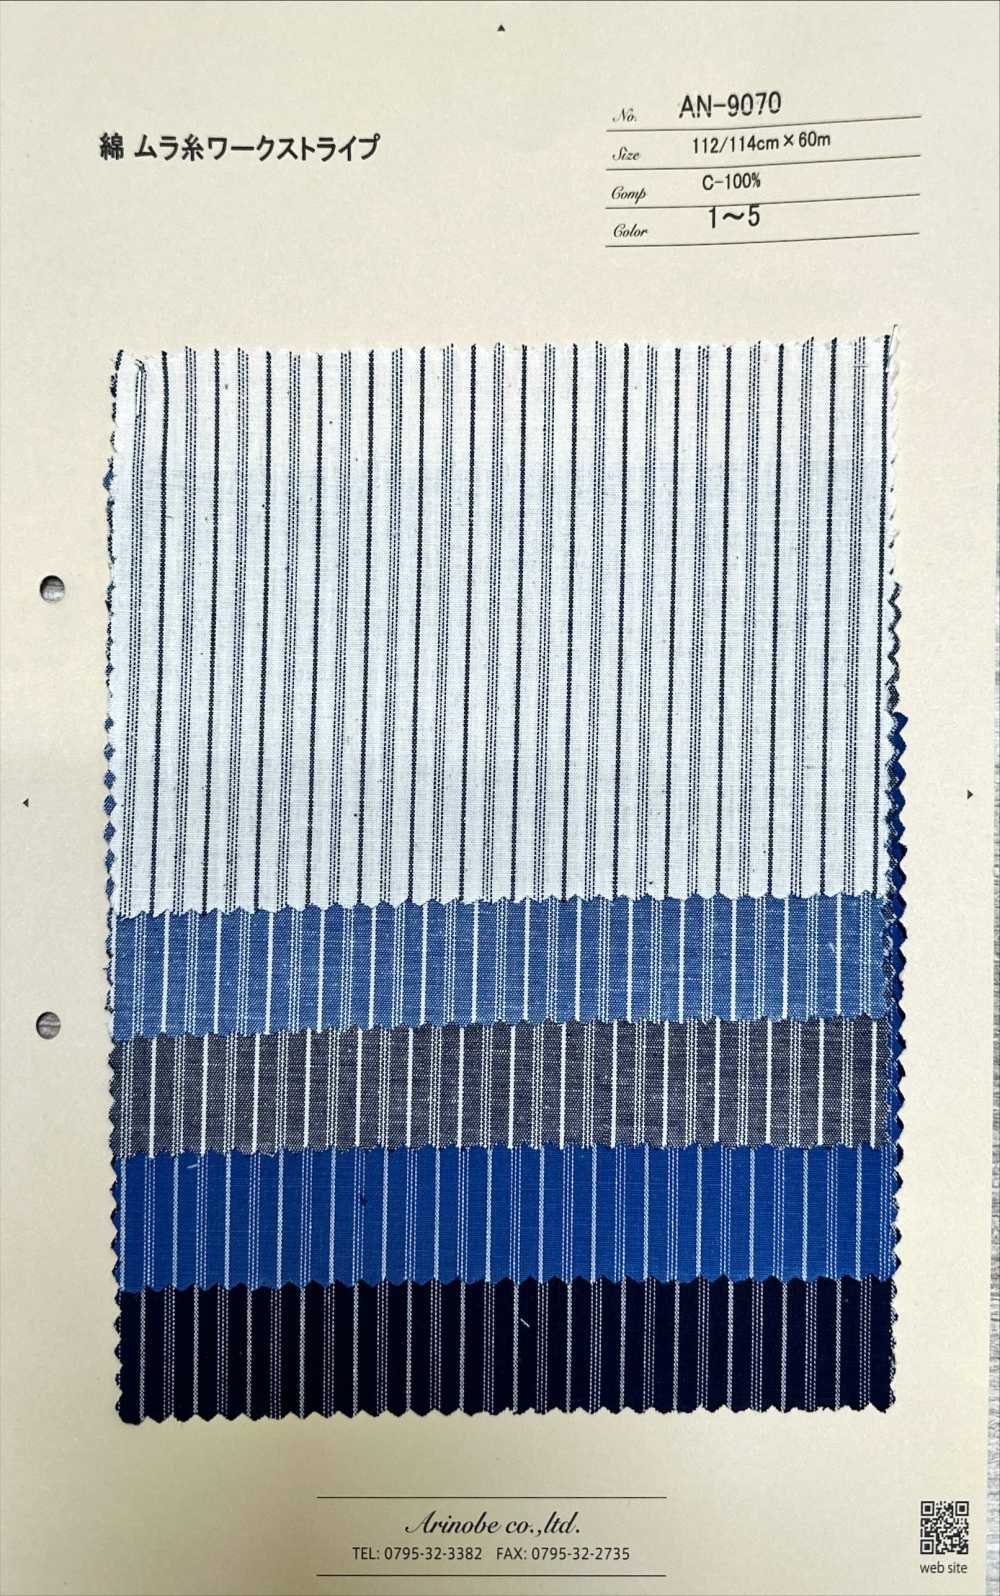 AN-9070 Baumwoll-Streifen Mit Ungleichmäßiger Fadenarbeit[Textilgewebe] ARINOBE CO., LTD.